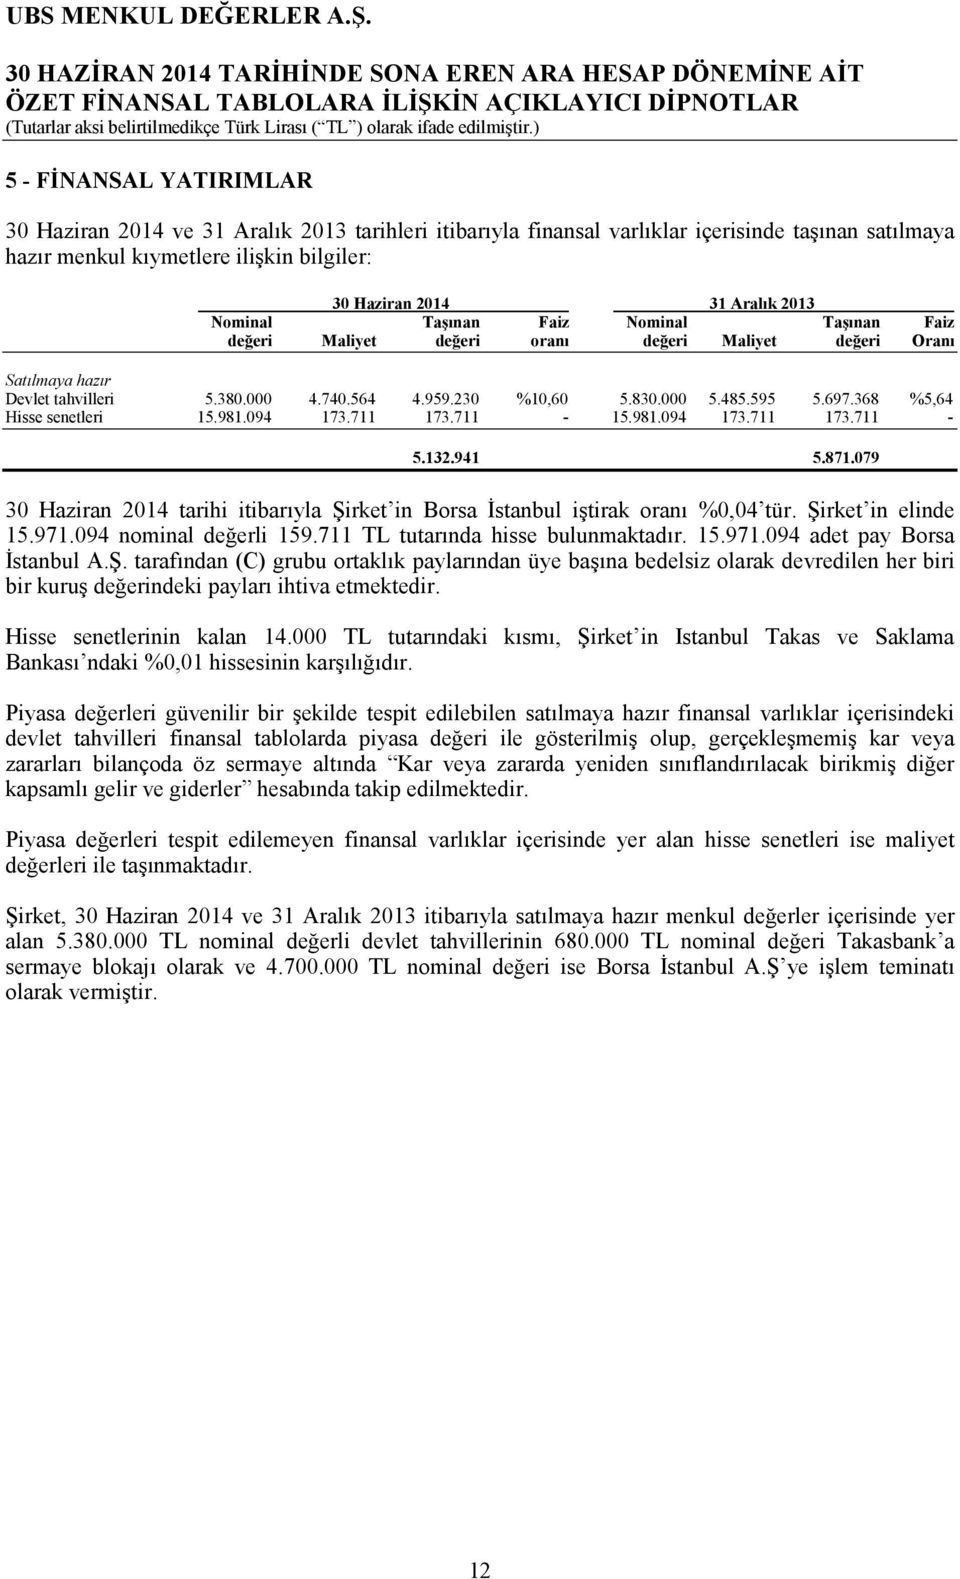 094 173.711 173.711-15.981.094 173.711 173.711-5.132.941 5.871.079 30 Haziran 2014 tarihi itibarıyla Şirket in Borsa İstanbul iştirak oranı %0,04 tür. Şirket in elinde 15.971.094 nominal değerli 159.